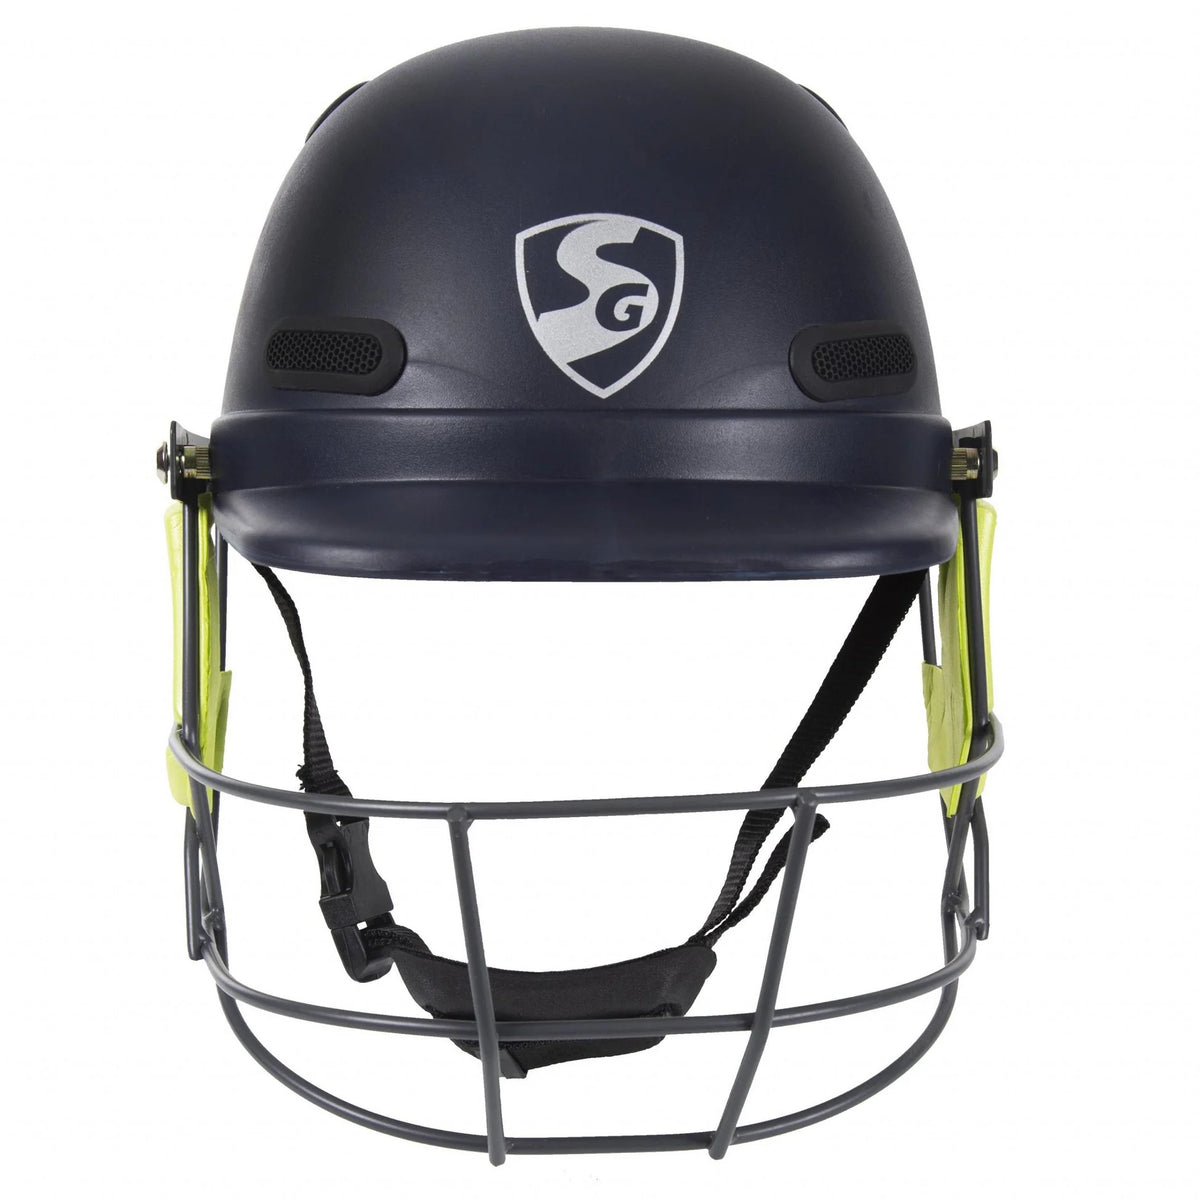 Pre-Order SG Aeroshield 2.0 Cricket Helmet